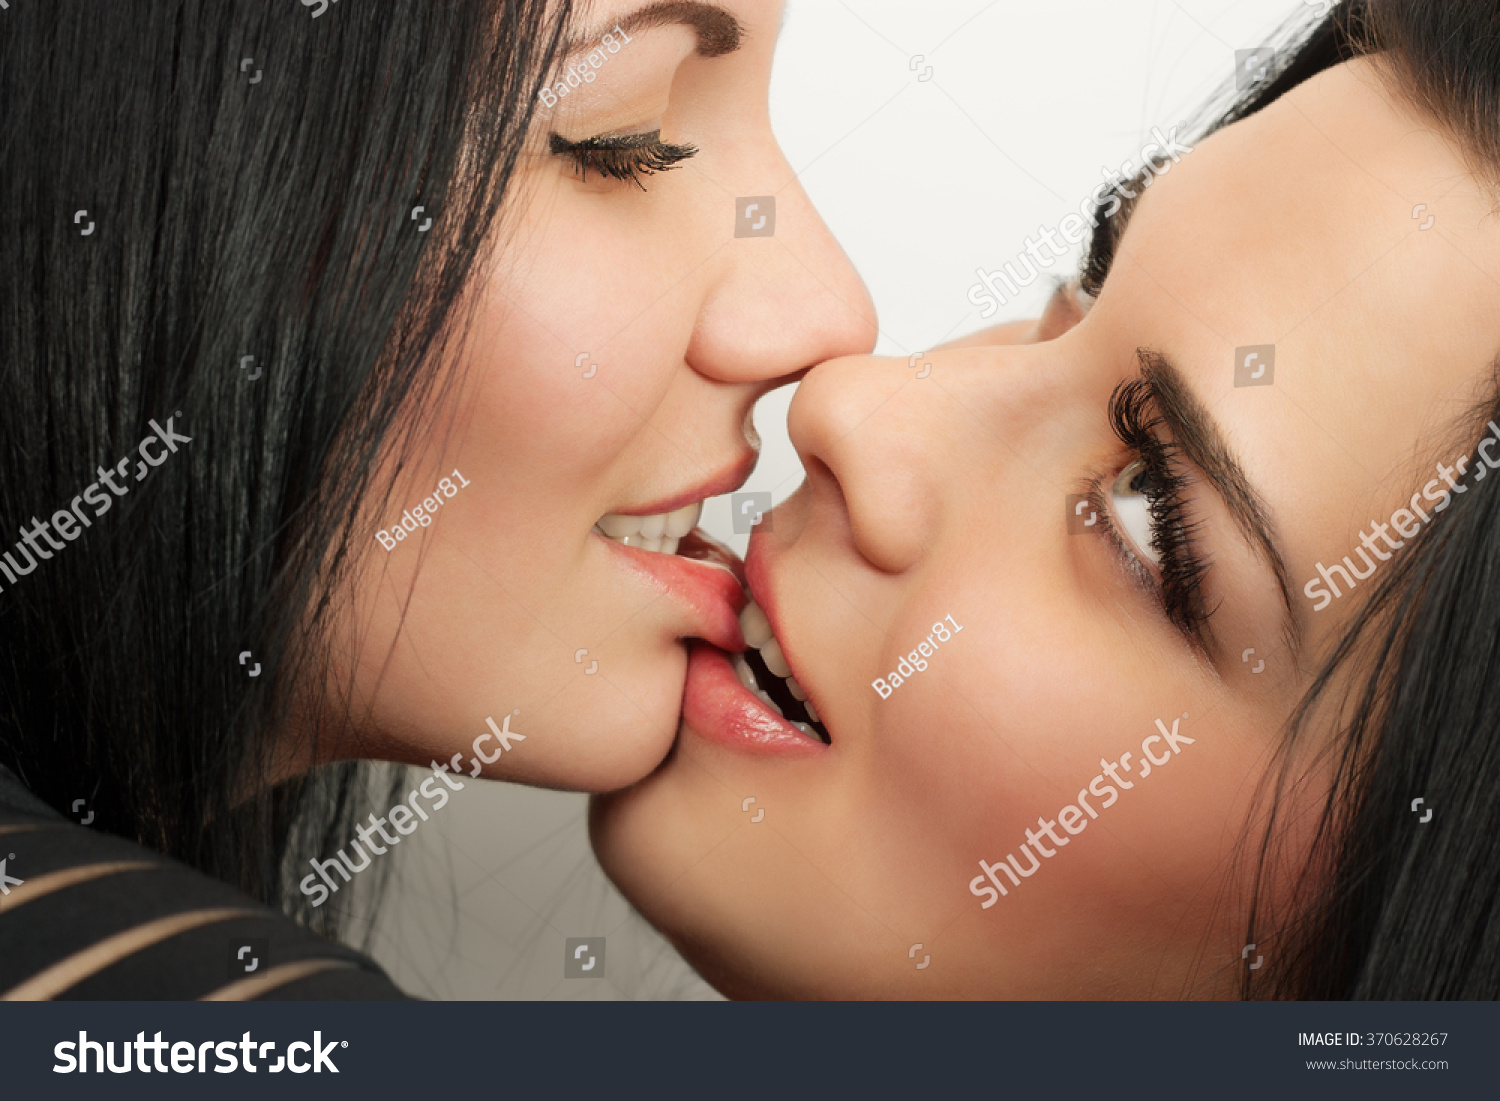 Лесбиянки в разноцветных одеждах целуются и лижут киски